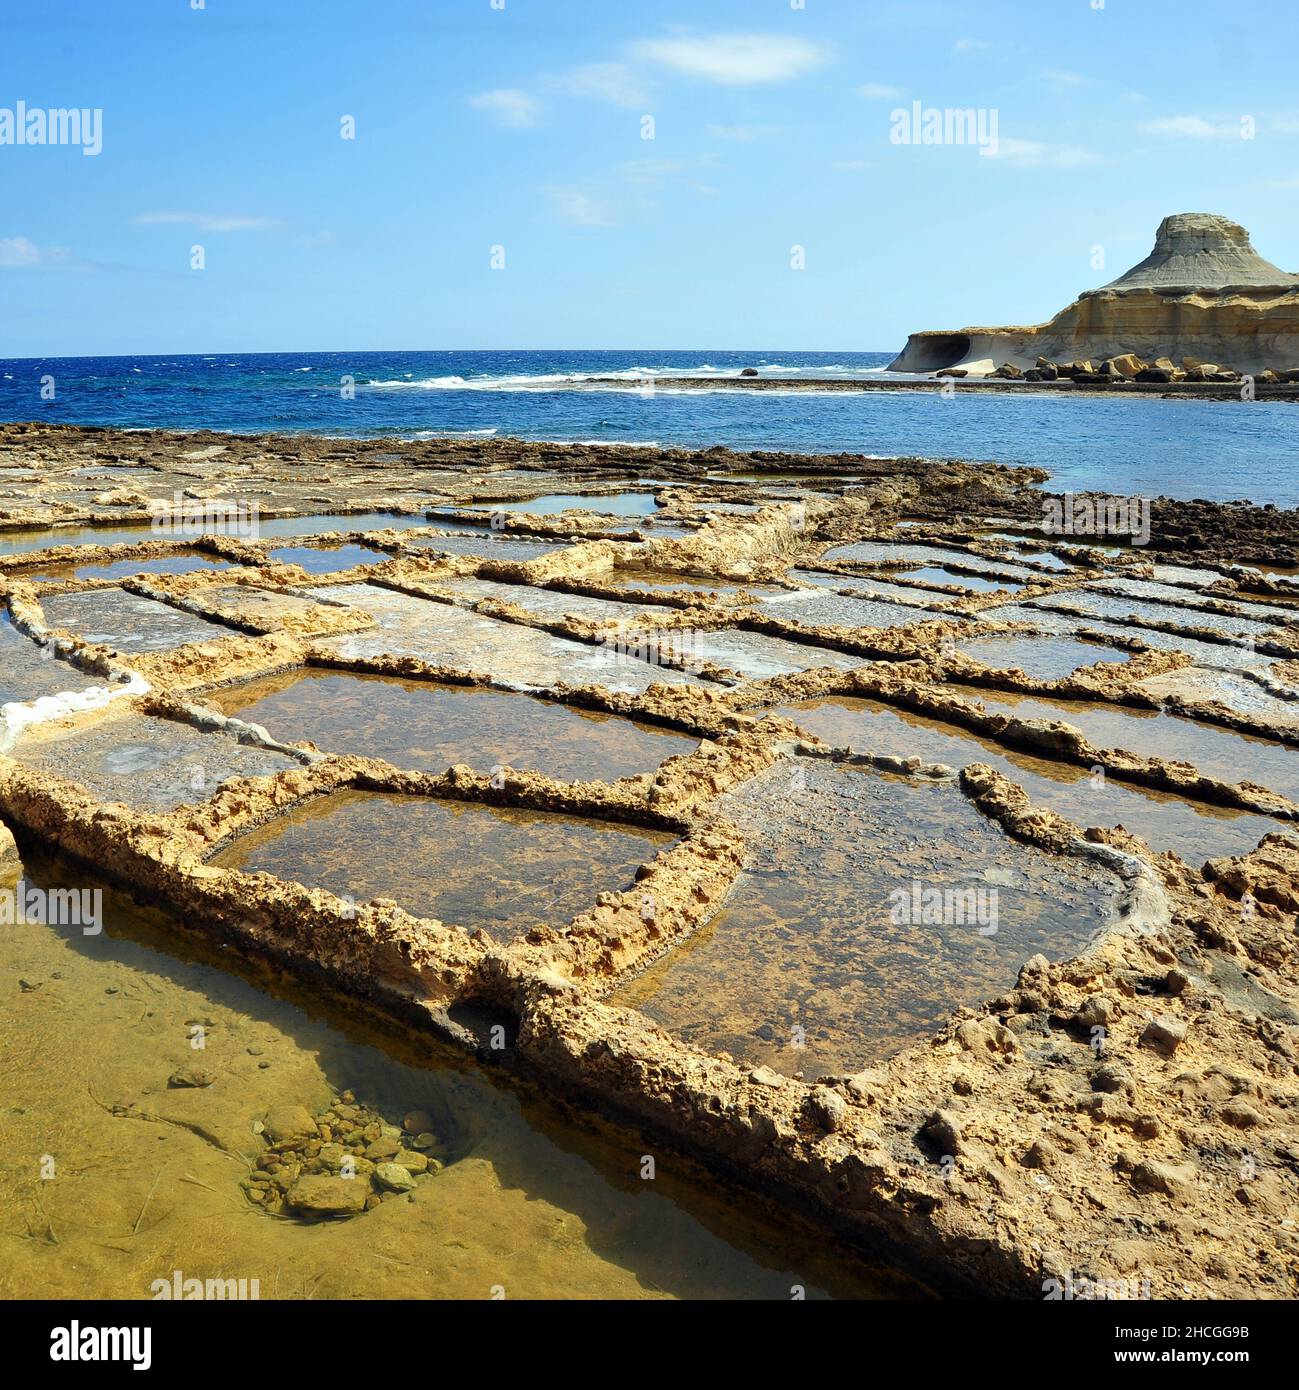 Belle vue sur les casseroles de sel, Marsalforn, Gozo, Malte Banque D'Images